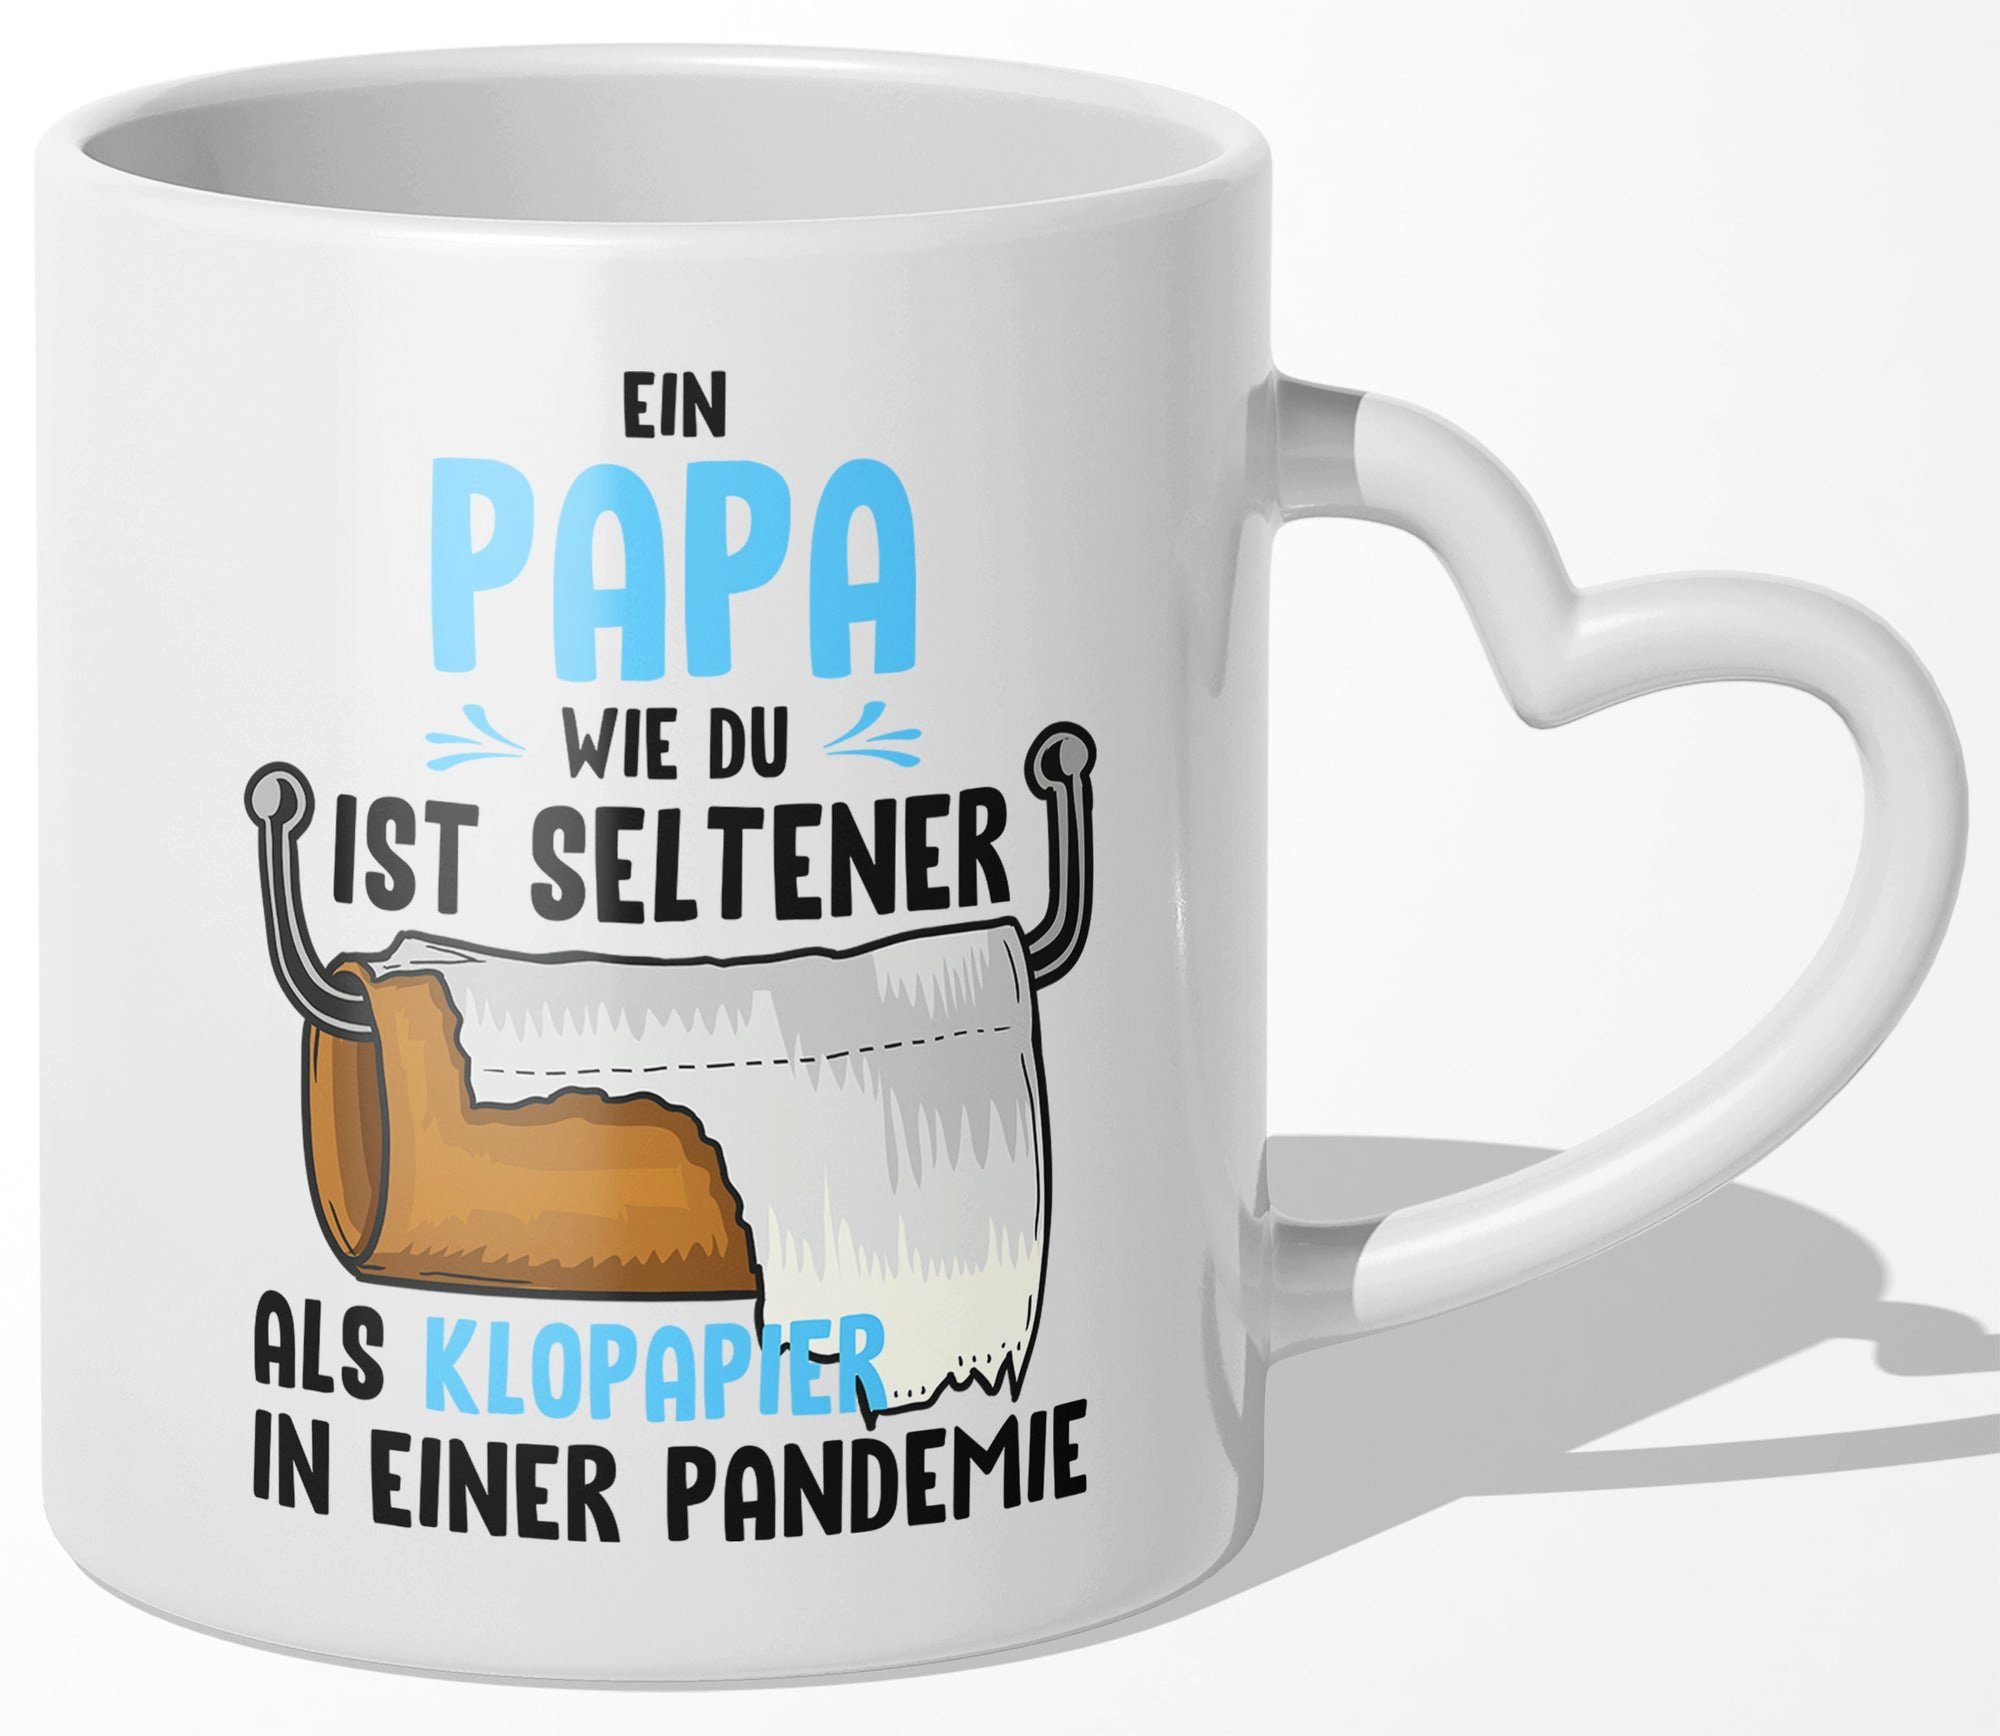 22Feels Tasse Papa Geschenk Vatertag Vater Geburtstag Herrentag Männer Weihnachten, Keramik, Made In Germany, Spülmaschinenfest, Herzhenkel